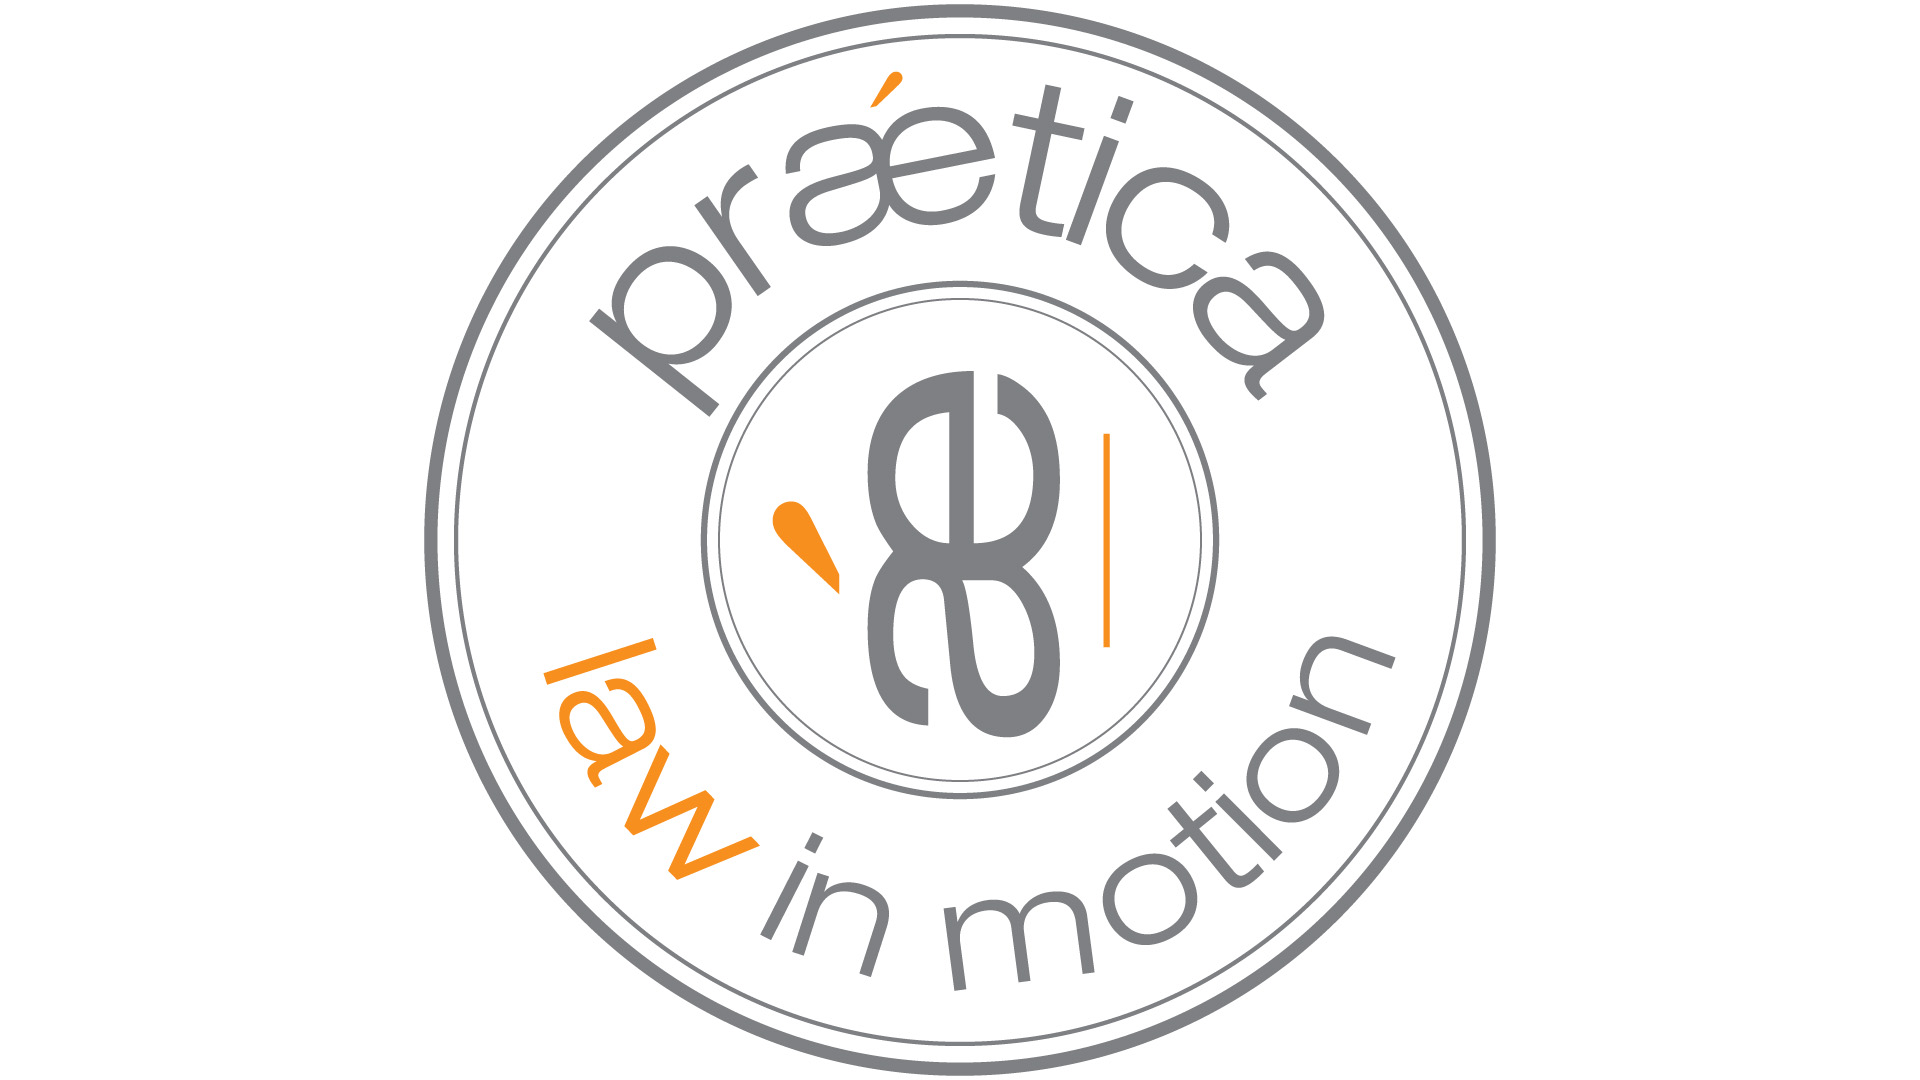 Praetica propose désormais un service de privacy & data protection